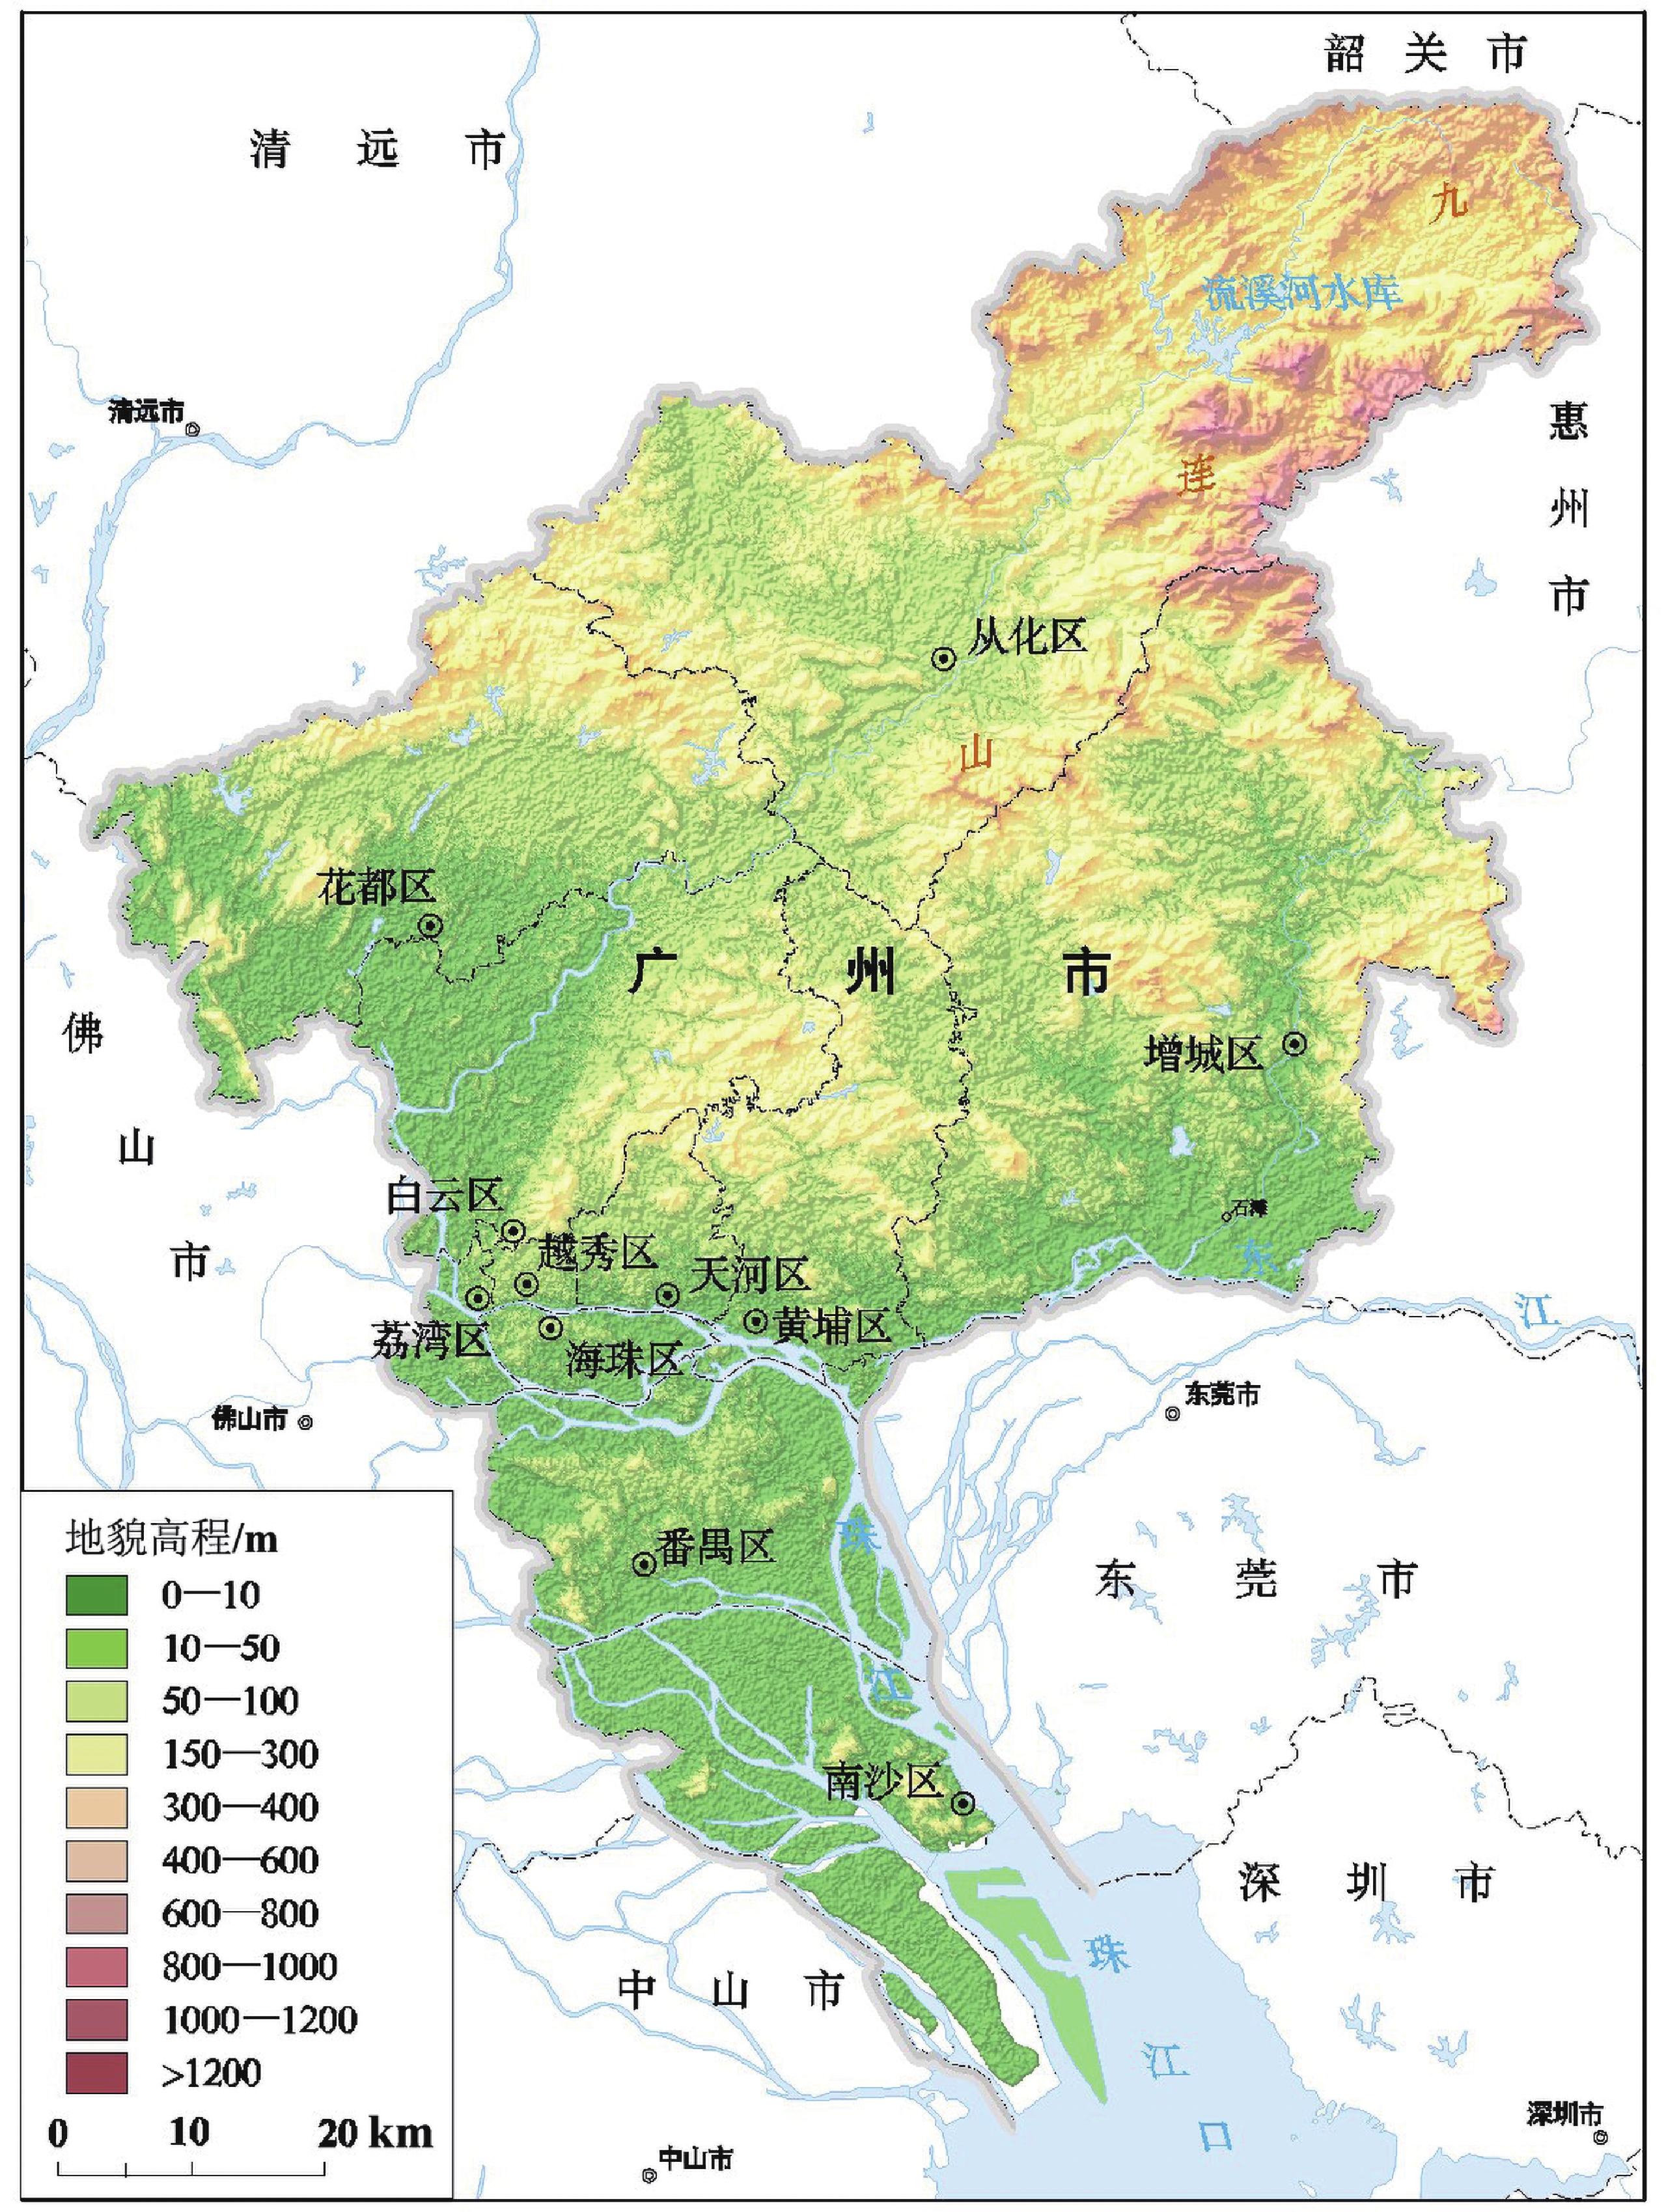 图 1 广州市三维地势图(自然资源部中国地质调查局,2019)